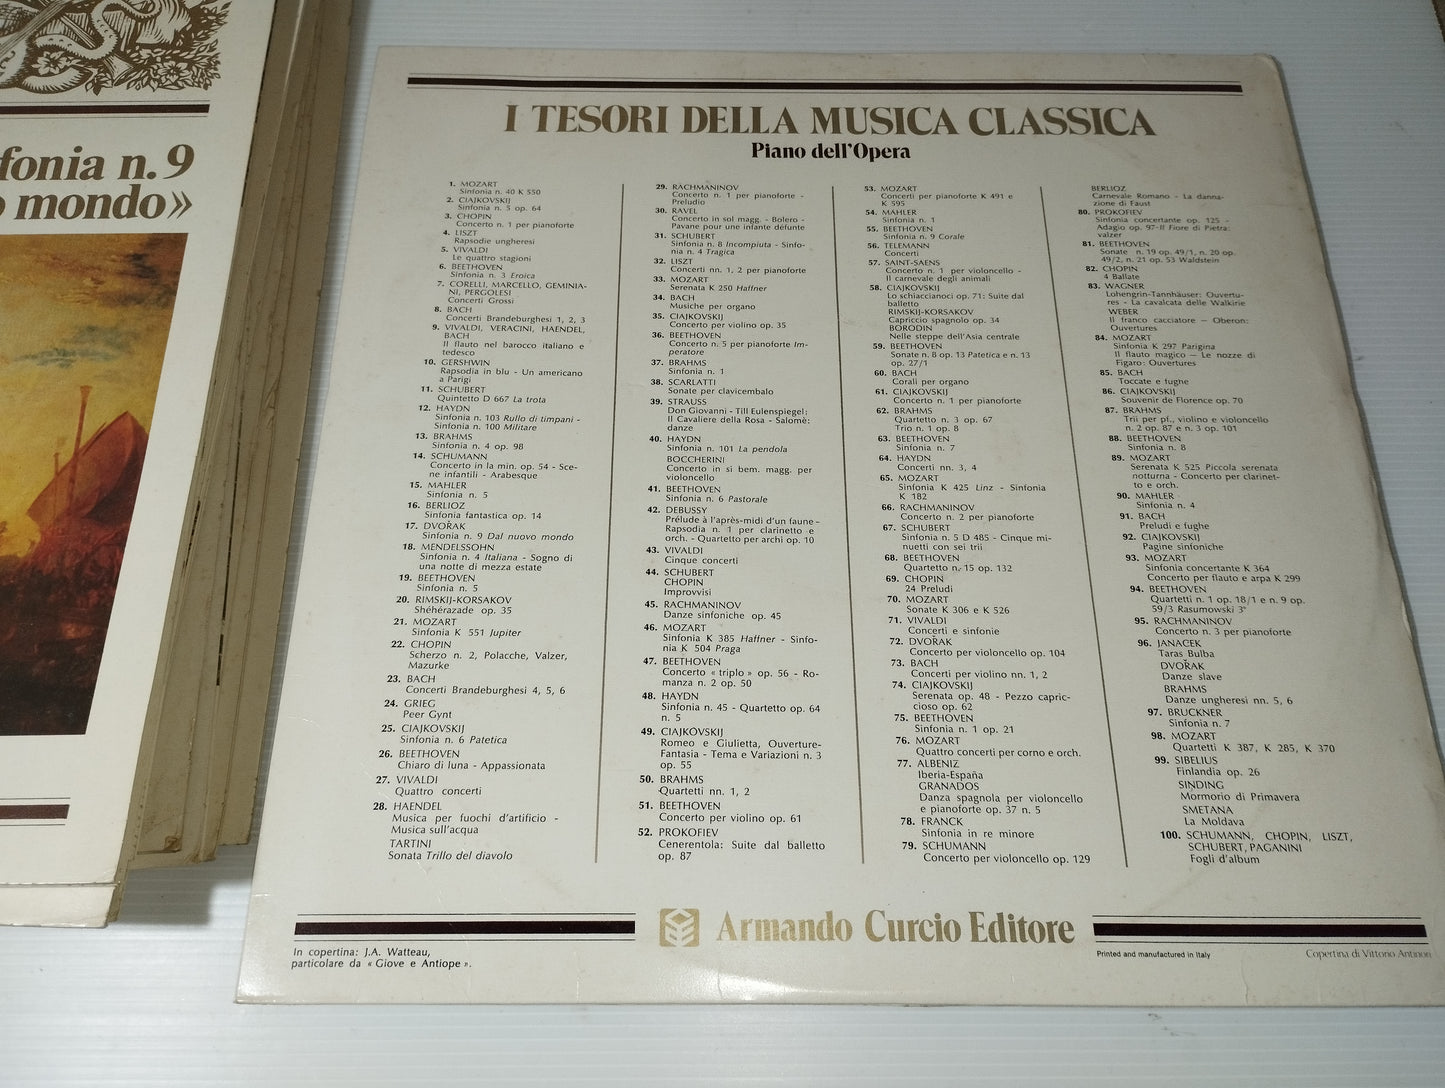 Tesori Della Musica Classica
Lotto 12 Lp 33 Giri
Editi fa Curcio Editore
Anni 70/80